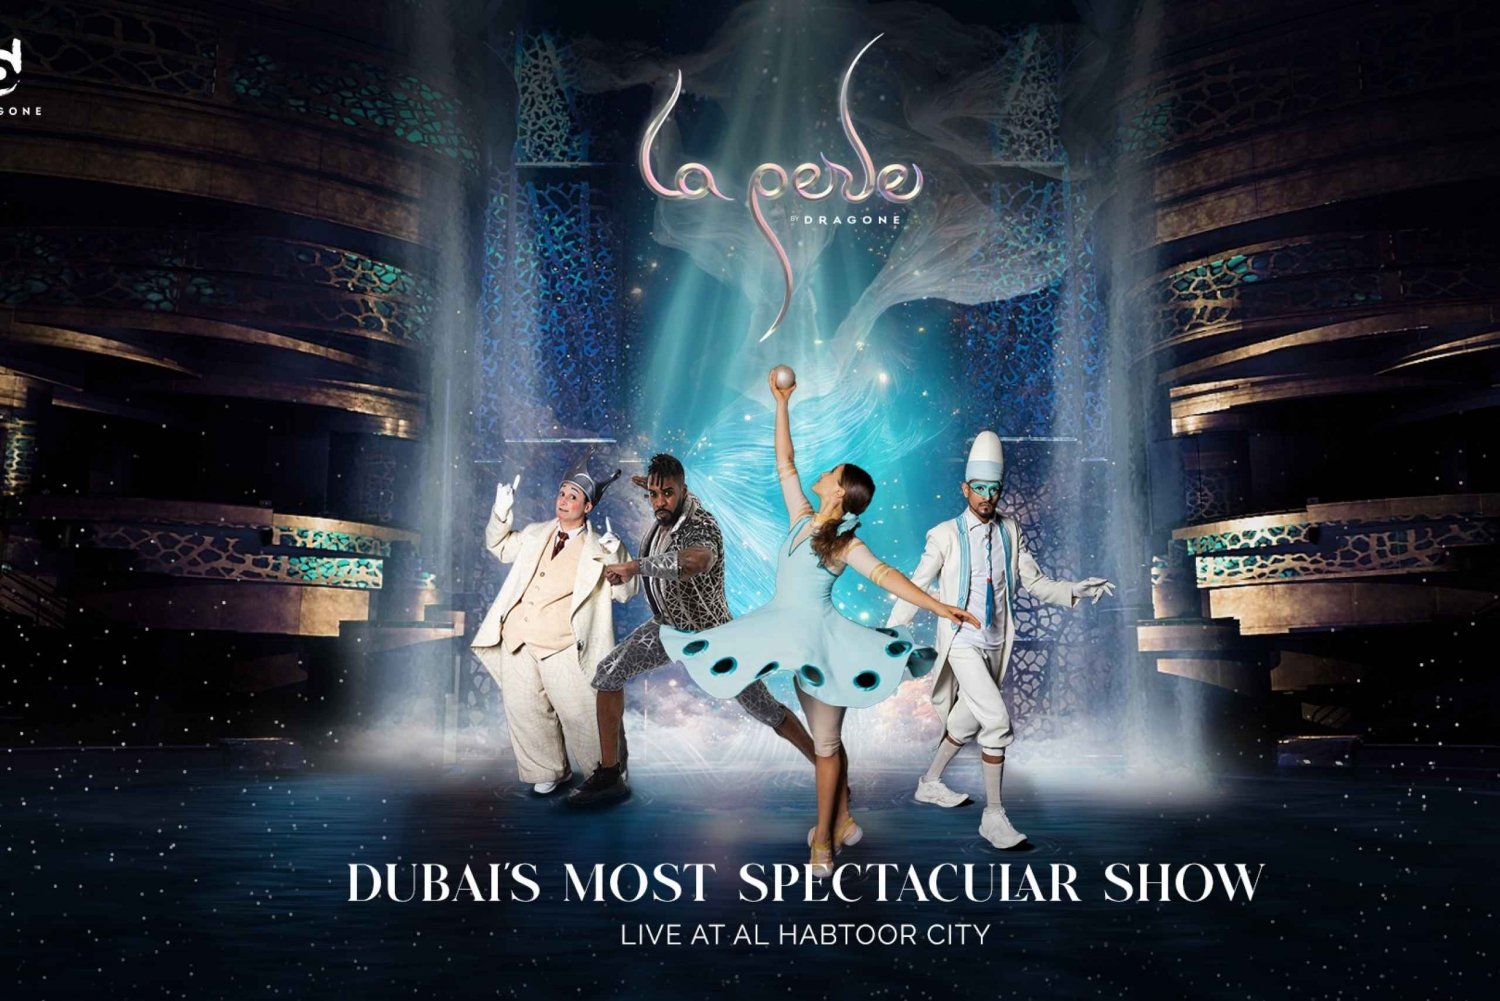 Dubai: biglietti per lo spettacolo La Perle by Dragone